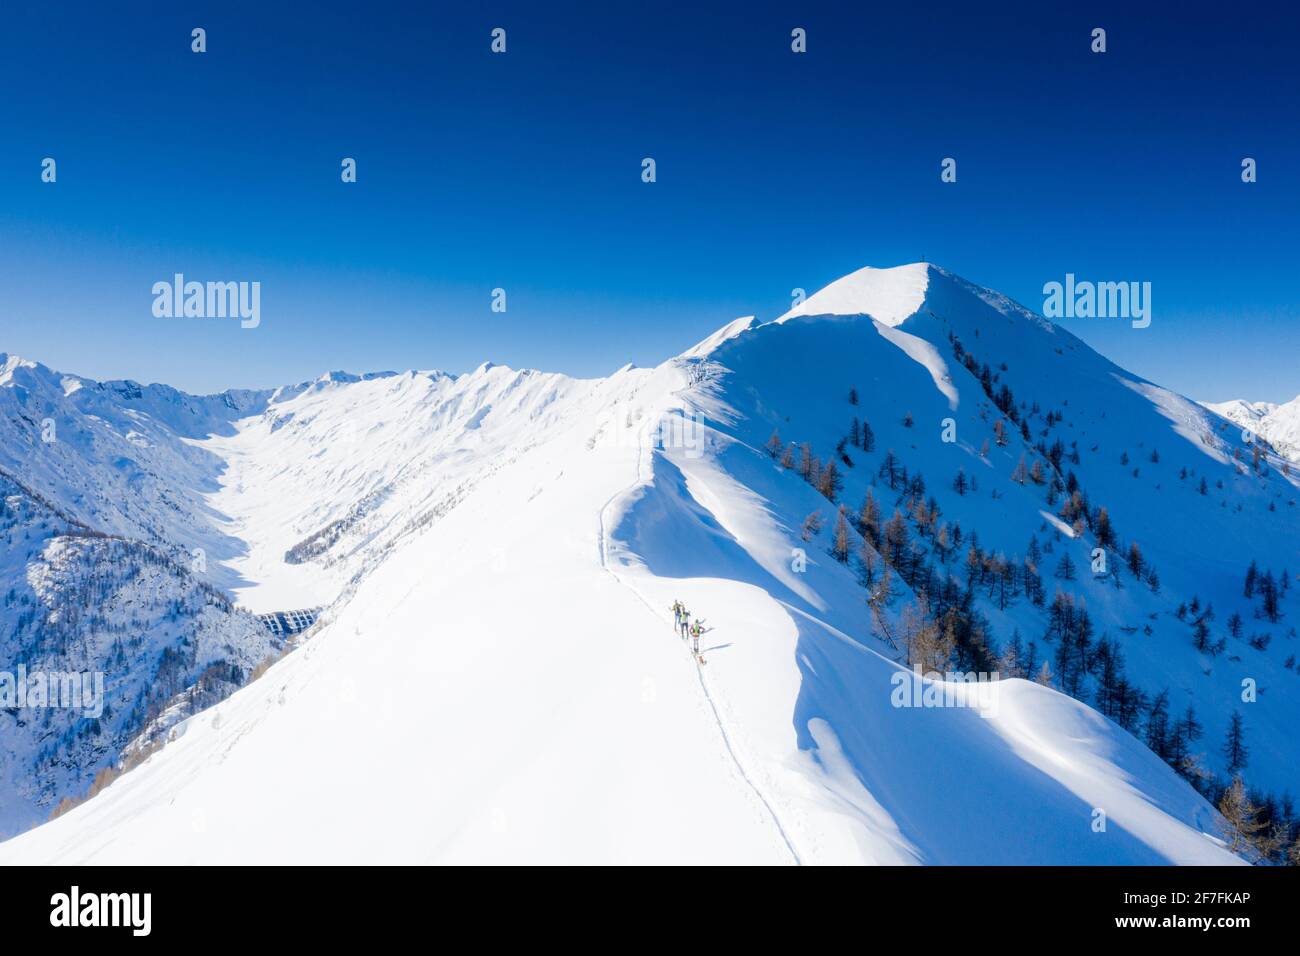 Les skieurs grimpent à Pizzo Meriggio avec des skis en hiver, Valtellina, Lombardie, Italie, Europe Banque D'Images